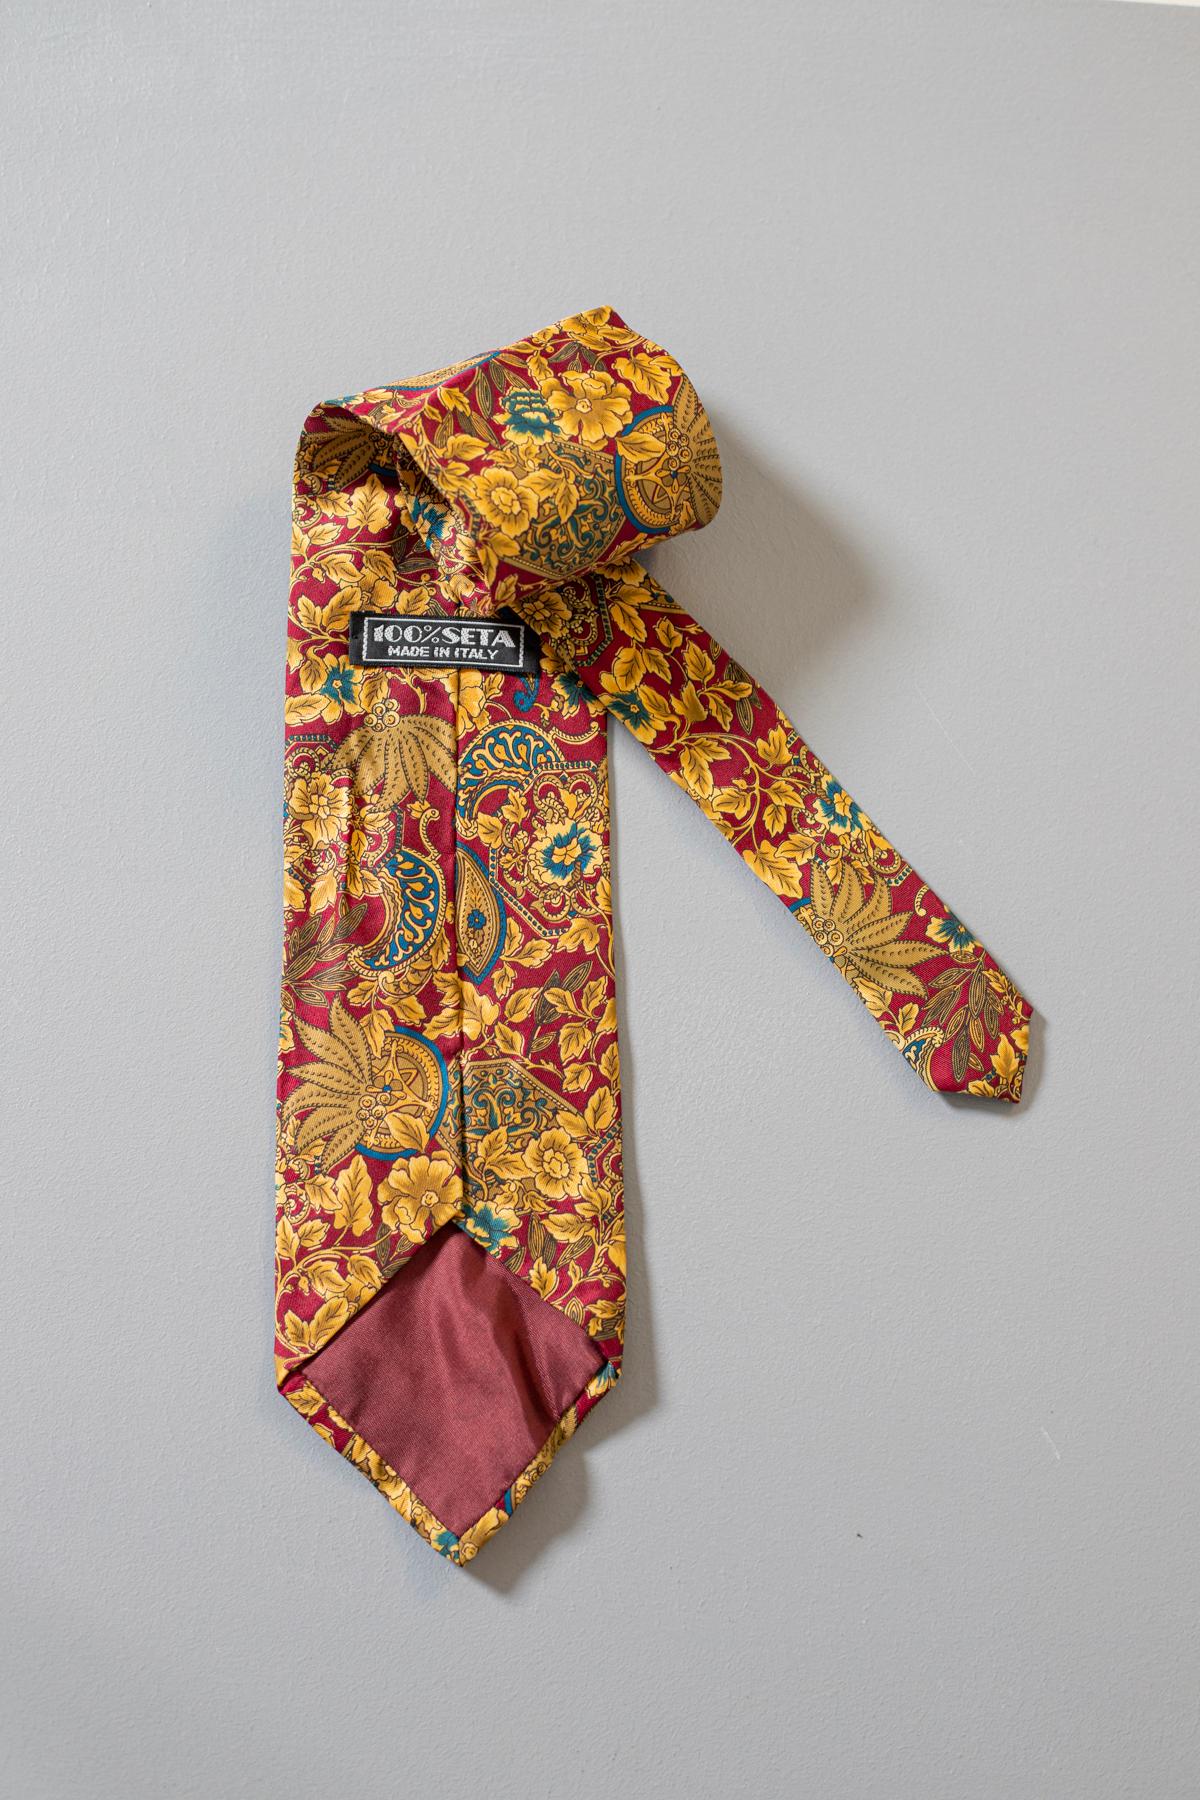 Multicolore, excentrique et élégante, cette cravate est de fabrication italienne, elle est composée de 100% de soie. Véritable evergreen, cette cravate est intemporelle, ornée de motifs cachemire dorés avec quelques détails bleus sur un fond rouge.